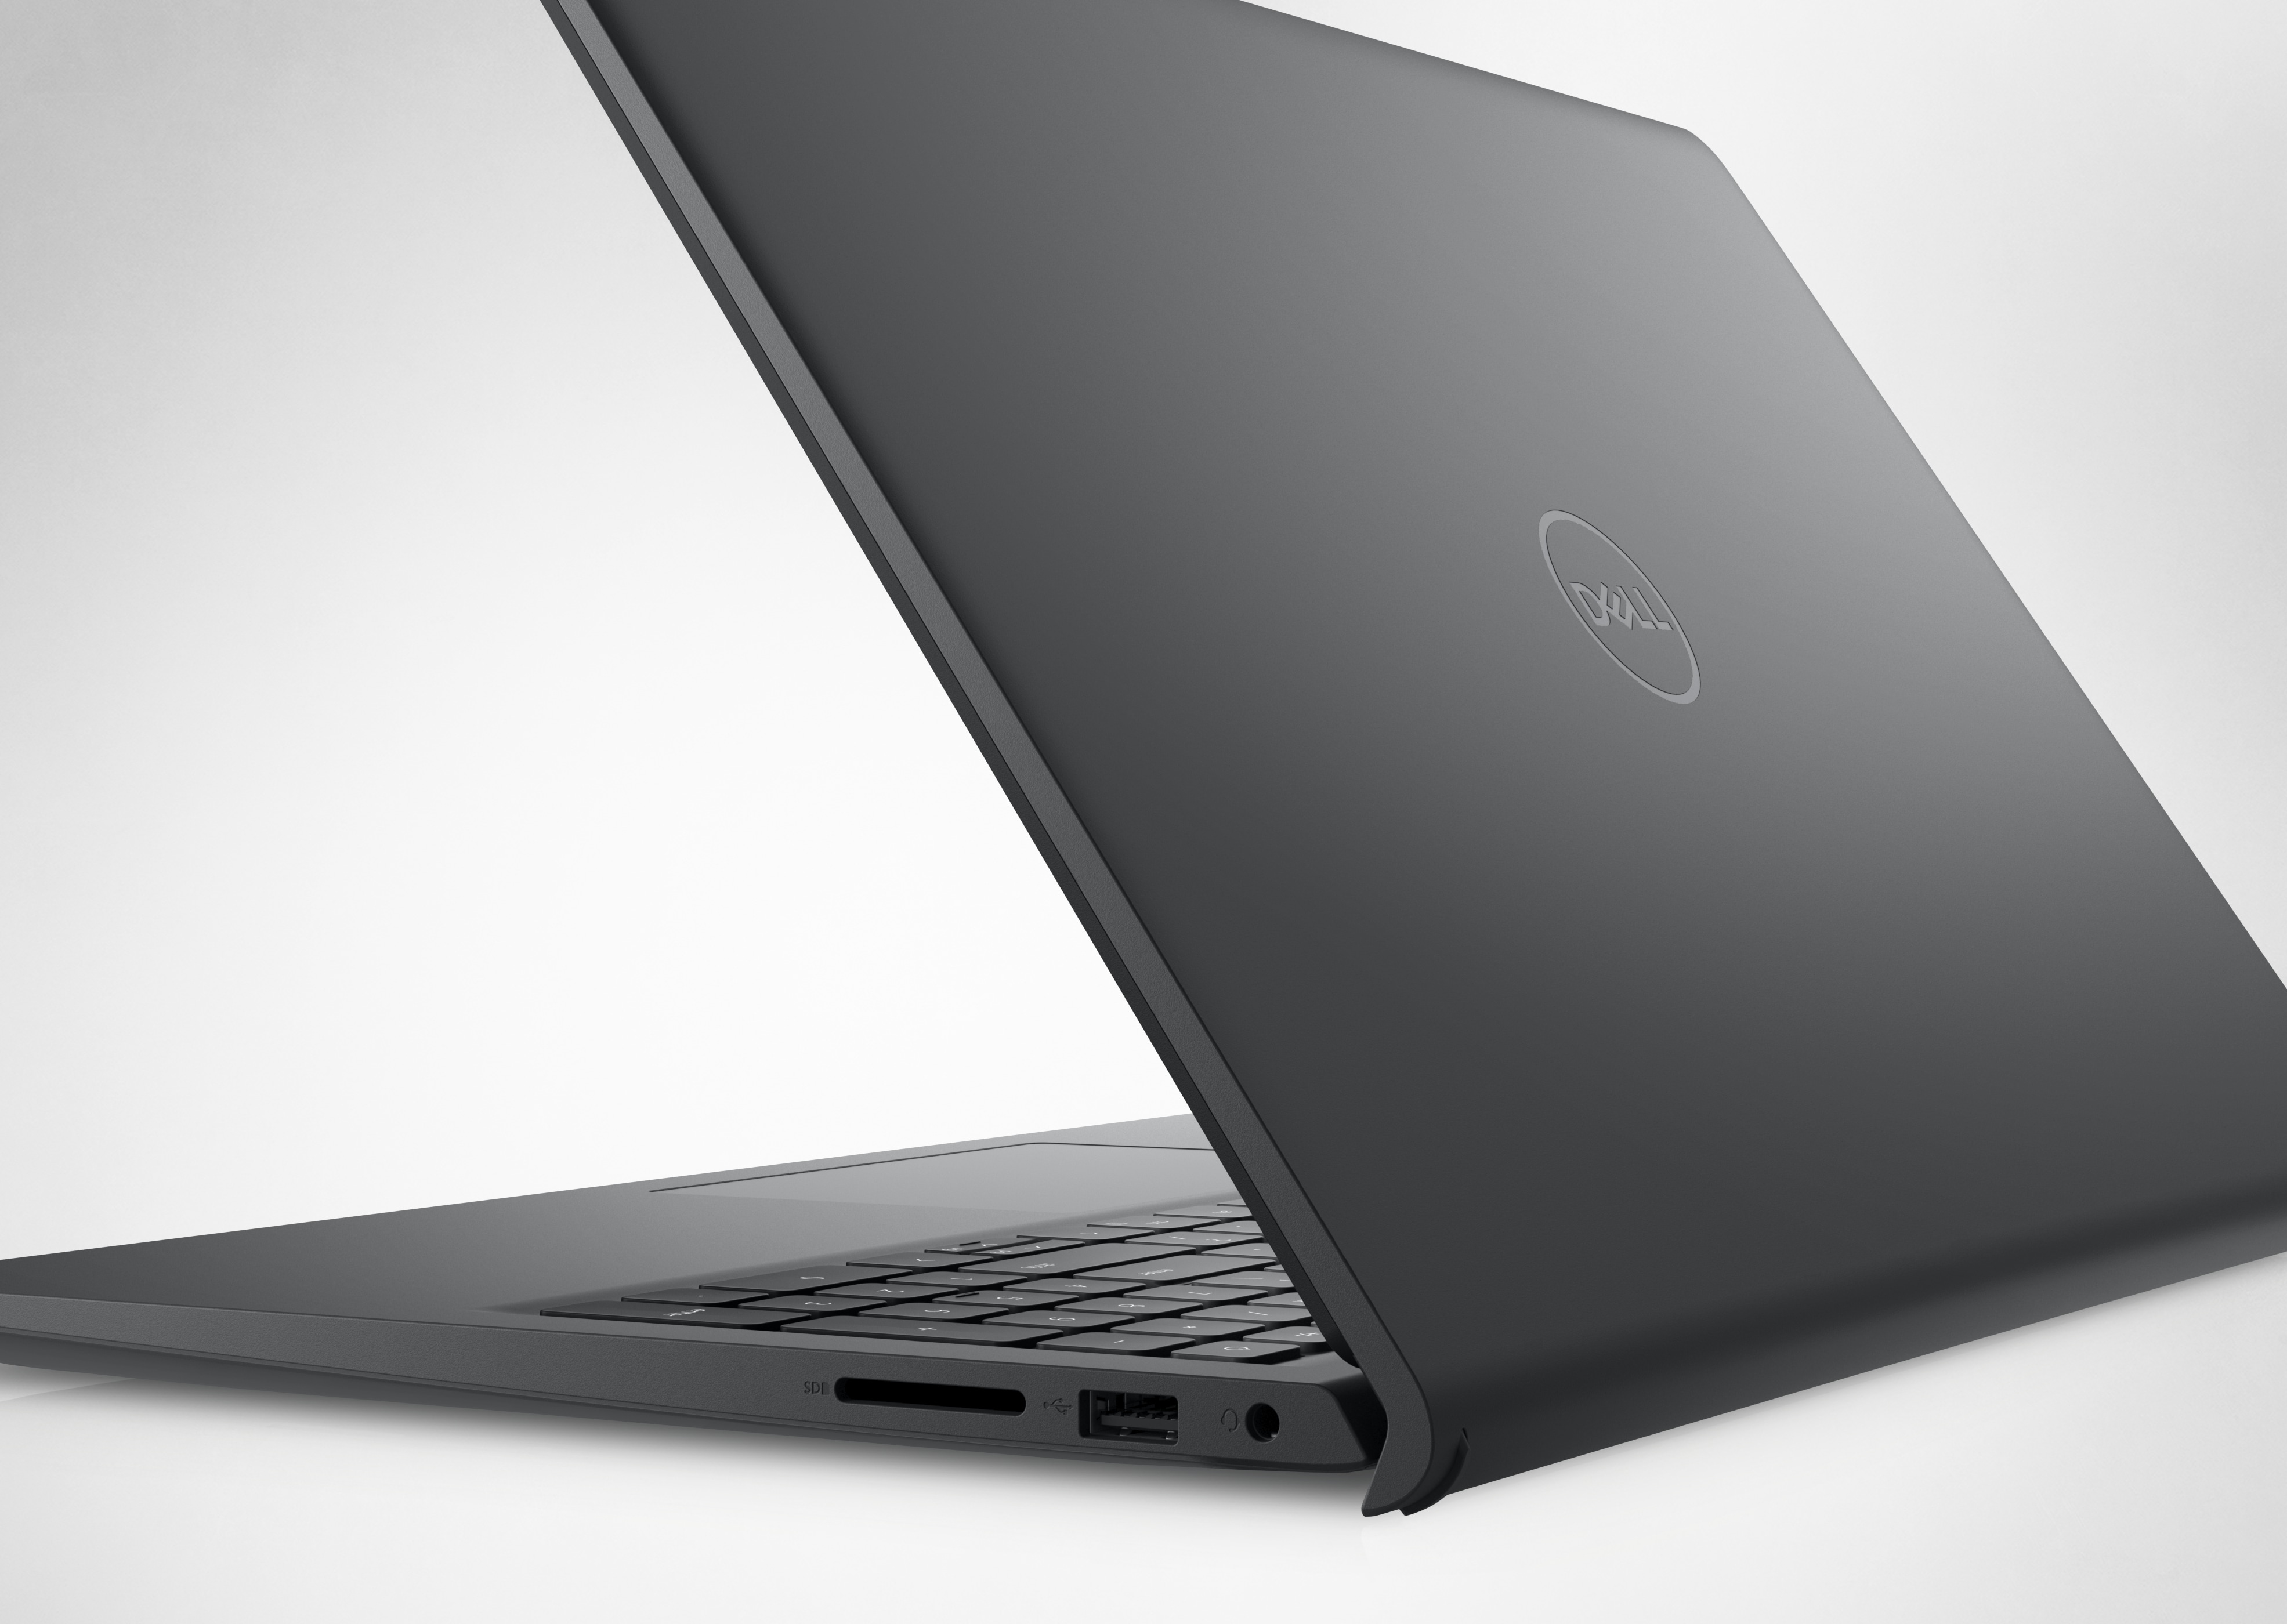 Bild eines geöffneten Dell Laptops vom Typ Inspiron 15 3525, in dem die Rückseite und das Dell Logo sichtbar sind.